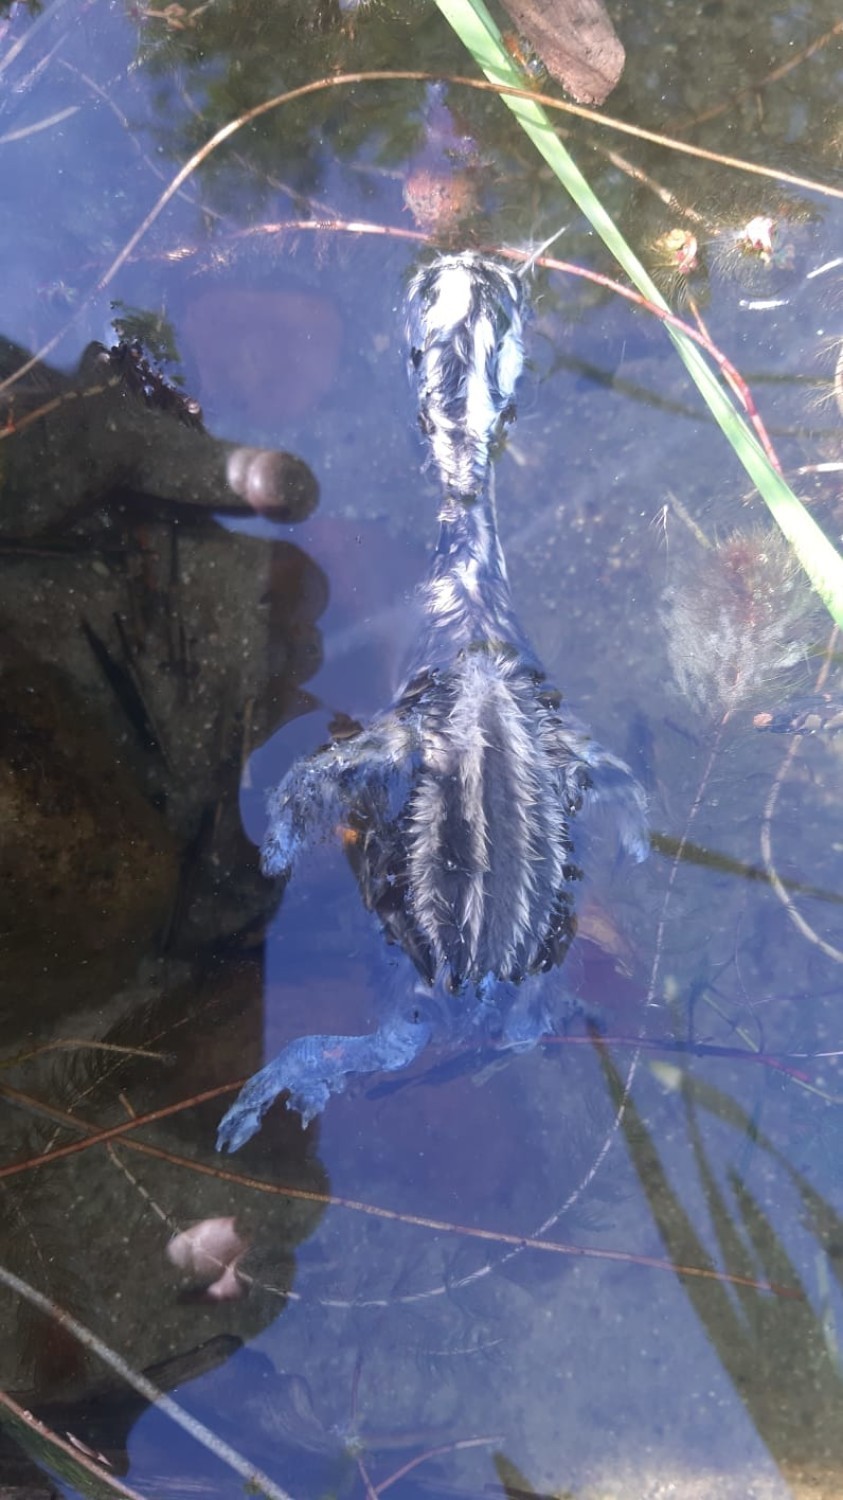 Na Jeziorze Glinowskim w gminie Parchowo ktoś zabił pisklęta perkoza (zdjęcia)